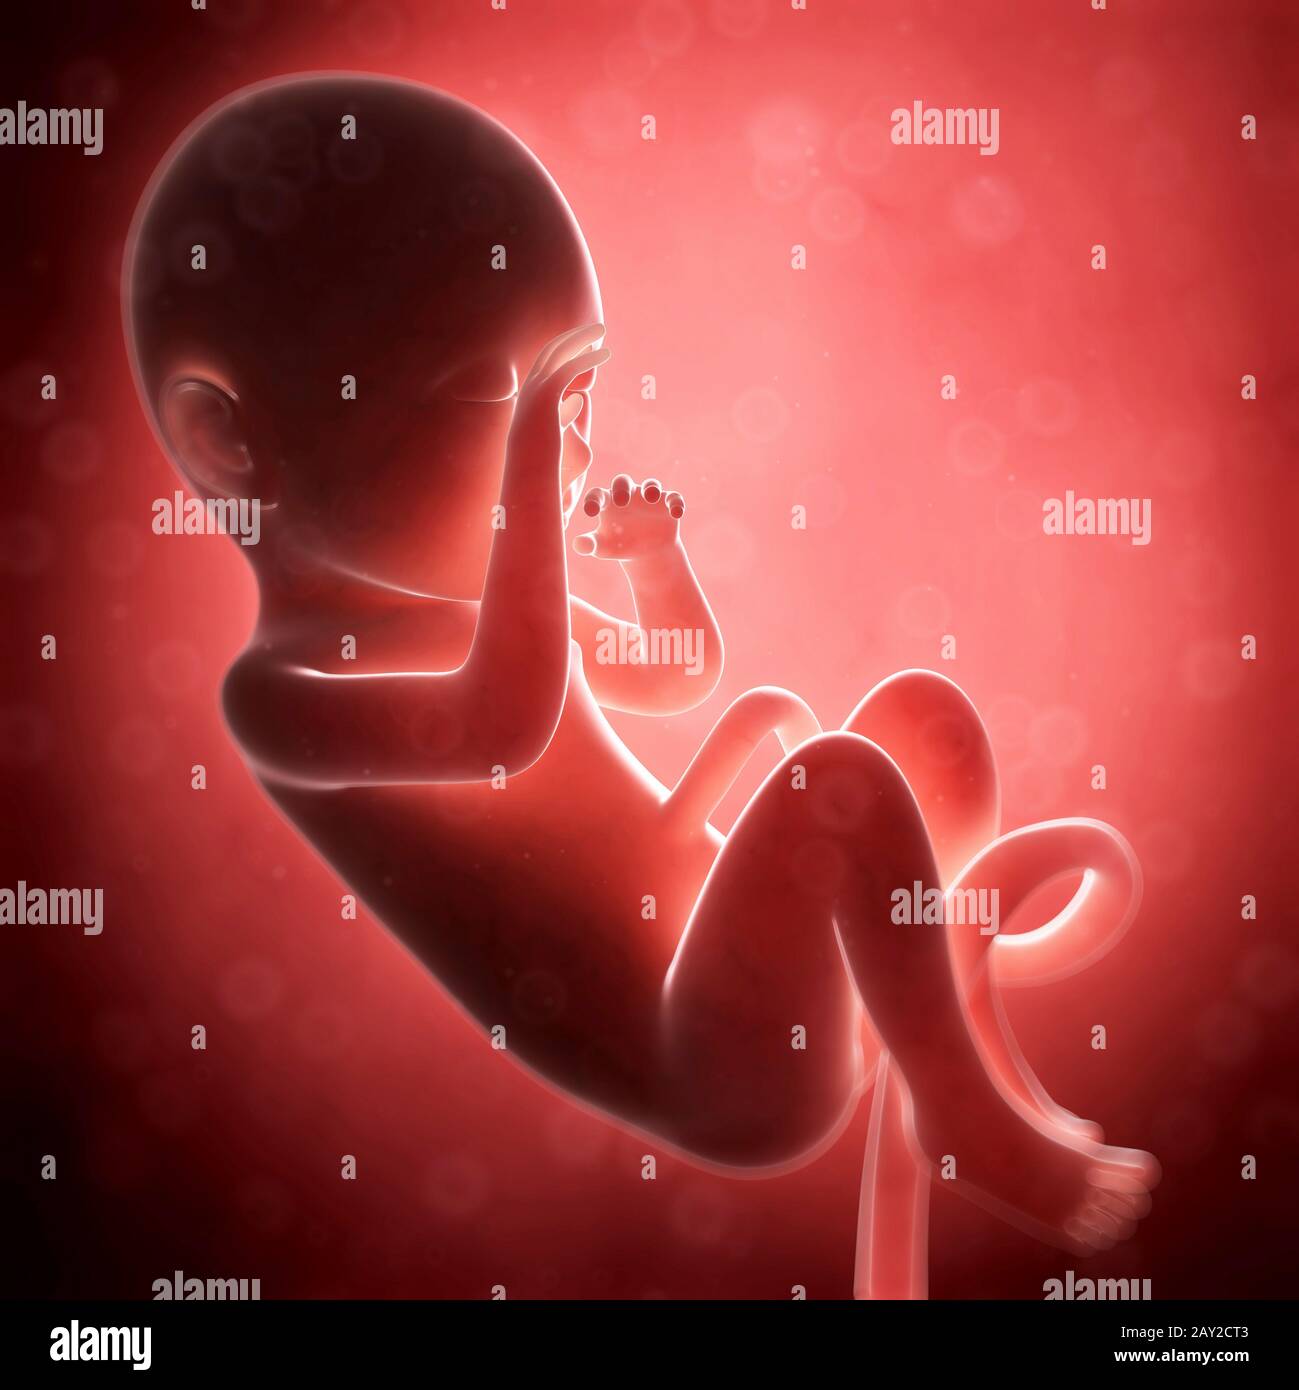 Rendu 3d illustration - fœtus humain 8 mois Banque D'Images